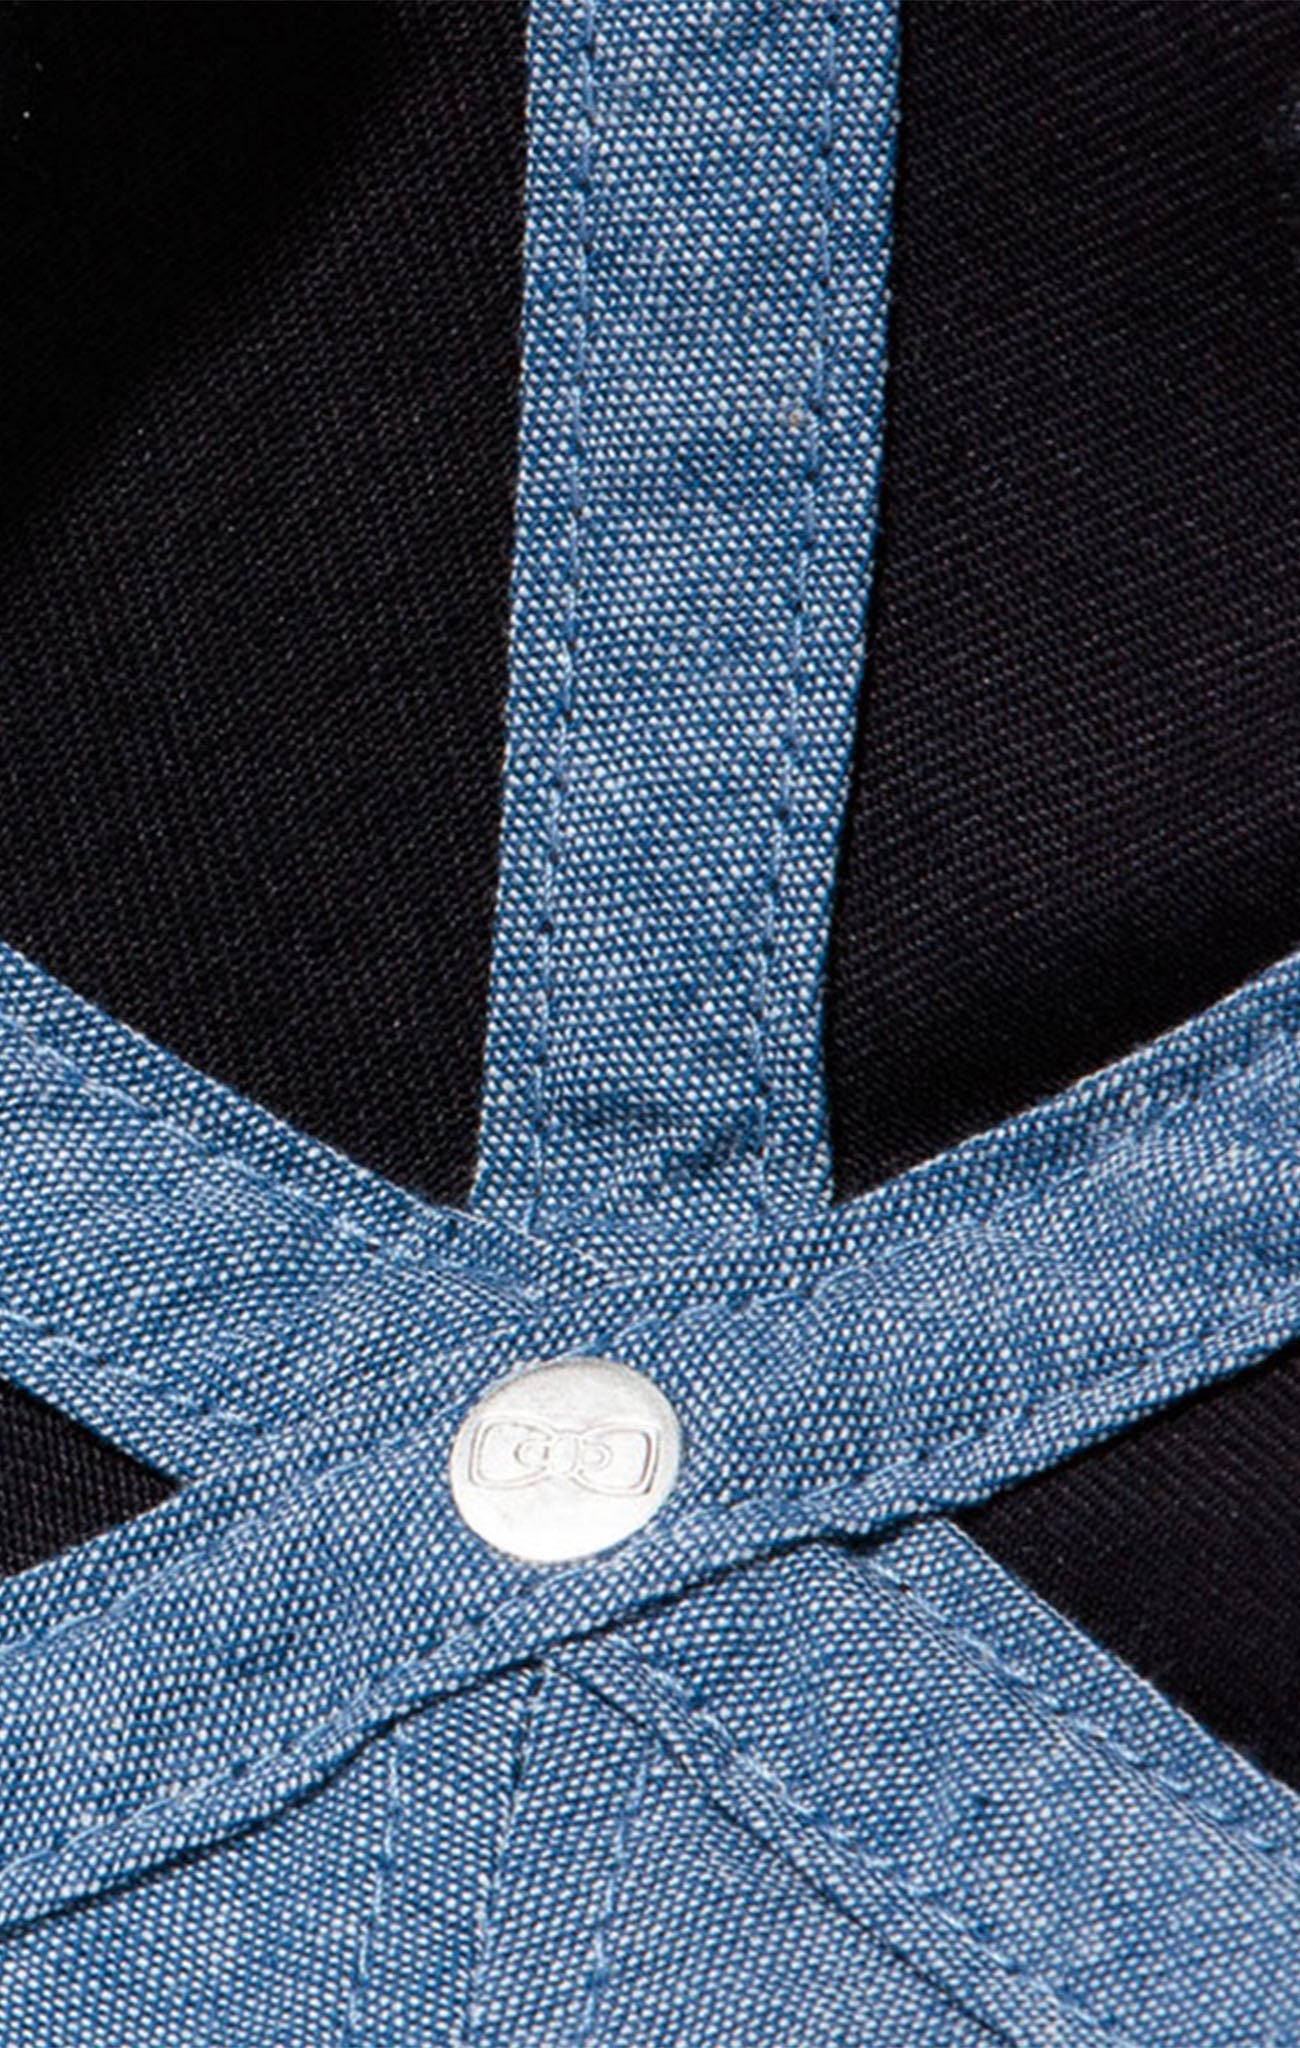 Casquette bleu marine unie en coton - Image 4